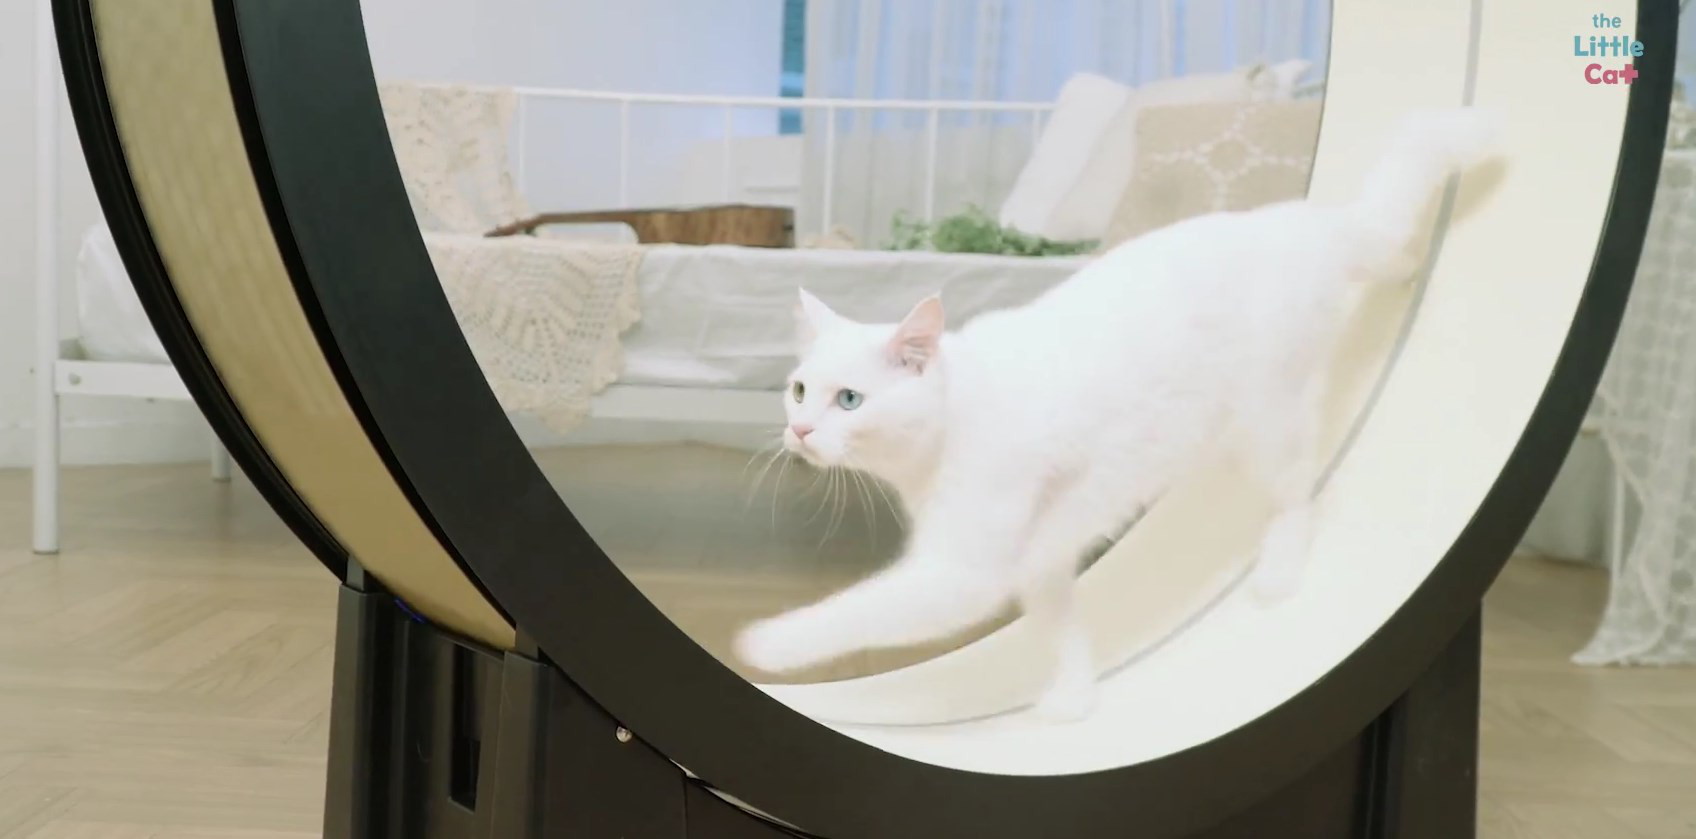 Видео дня: умная беговая дорожка для котов The Little Cat